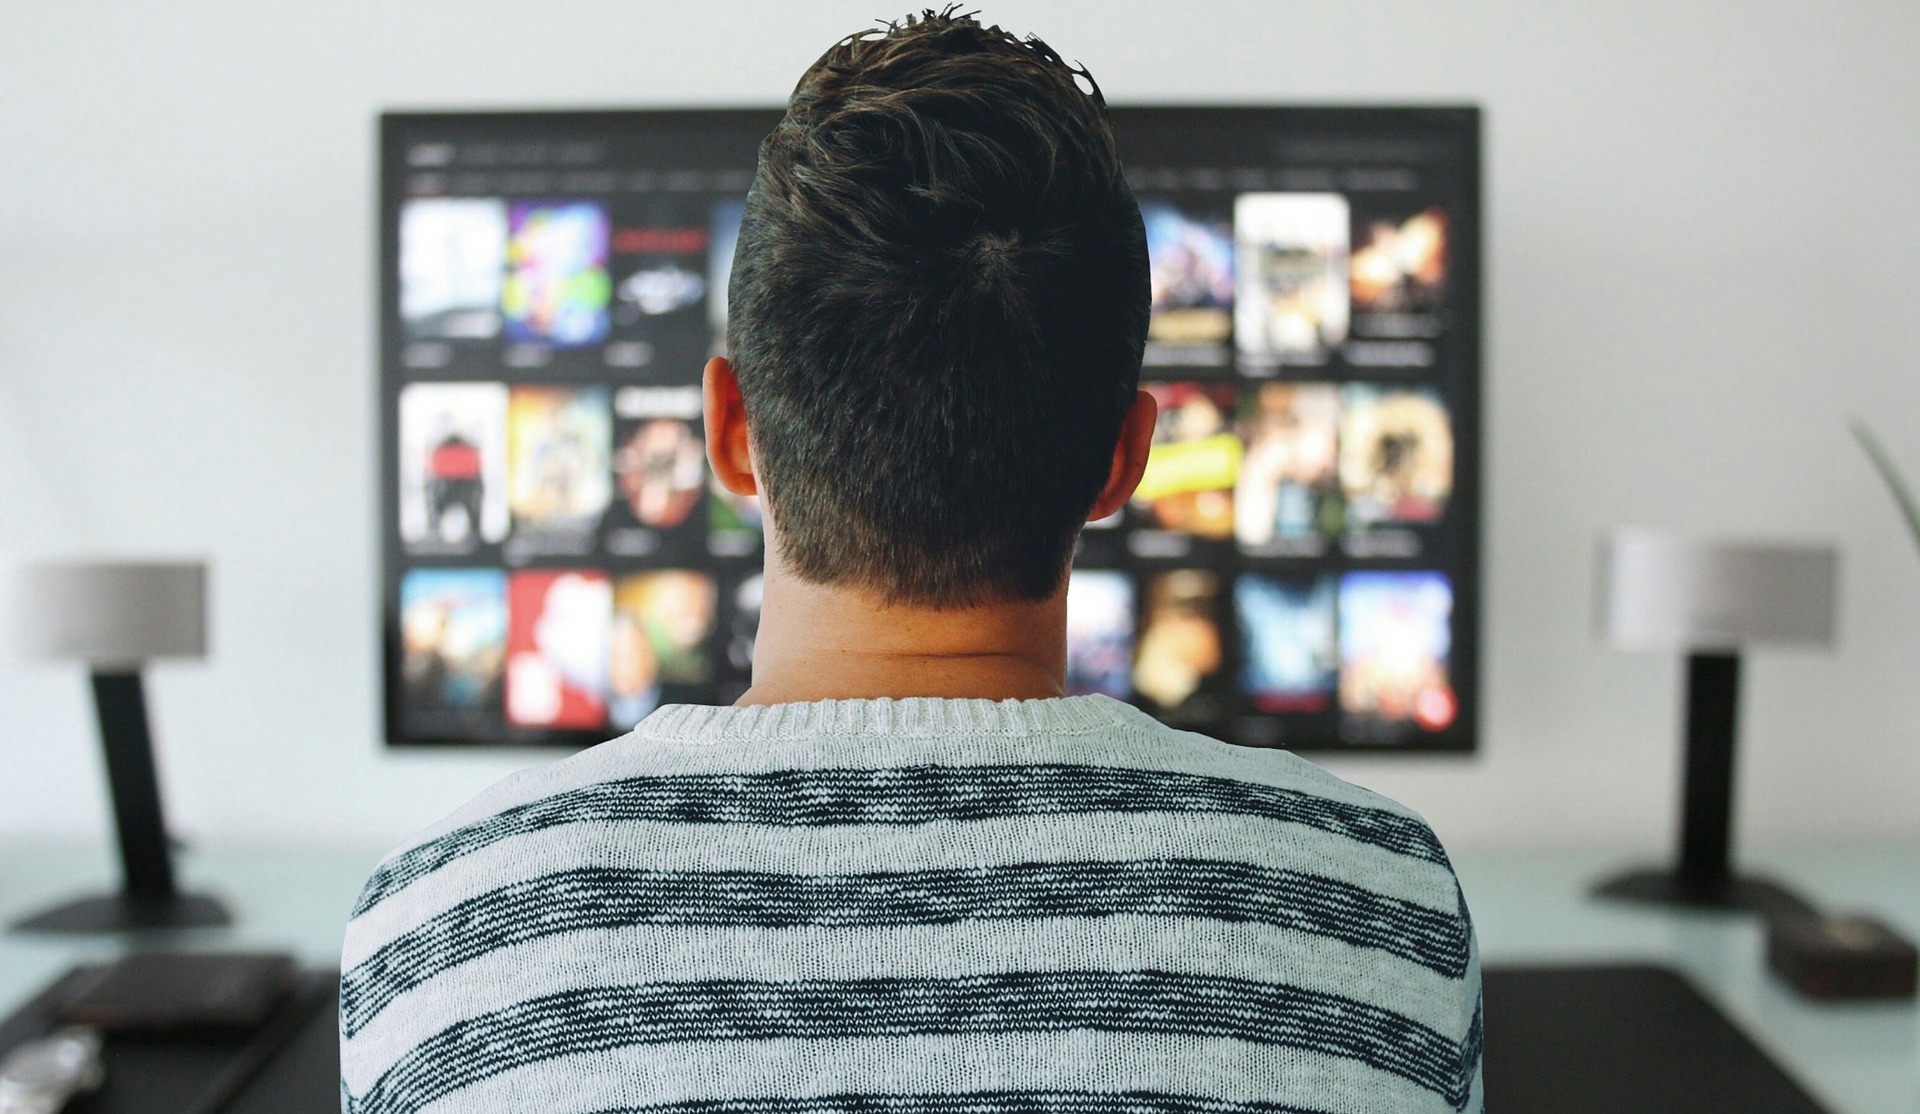 Netflix es una de las plataformas streaming más usadas en el mundo. (Foto Prensa Libre: Pixabay)